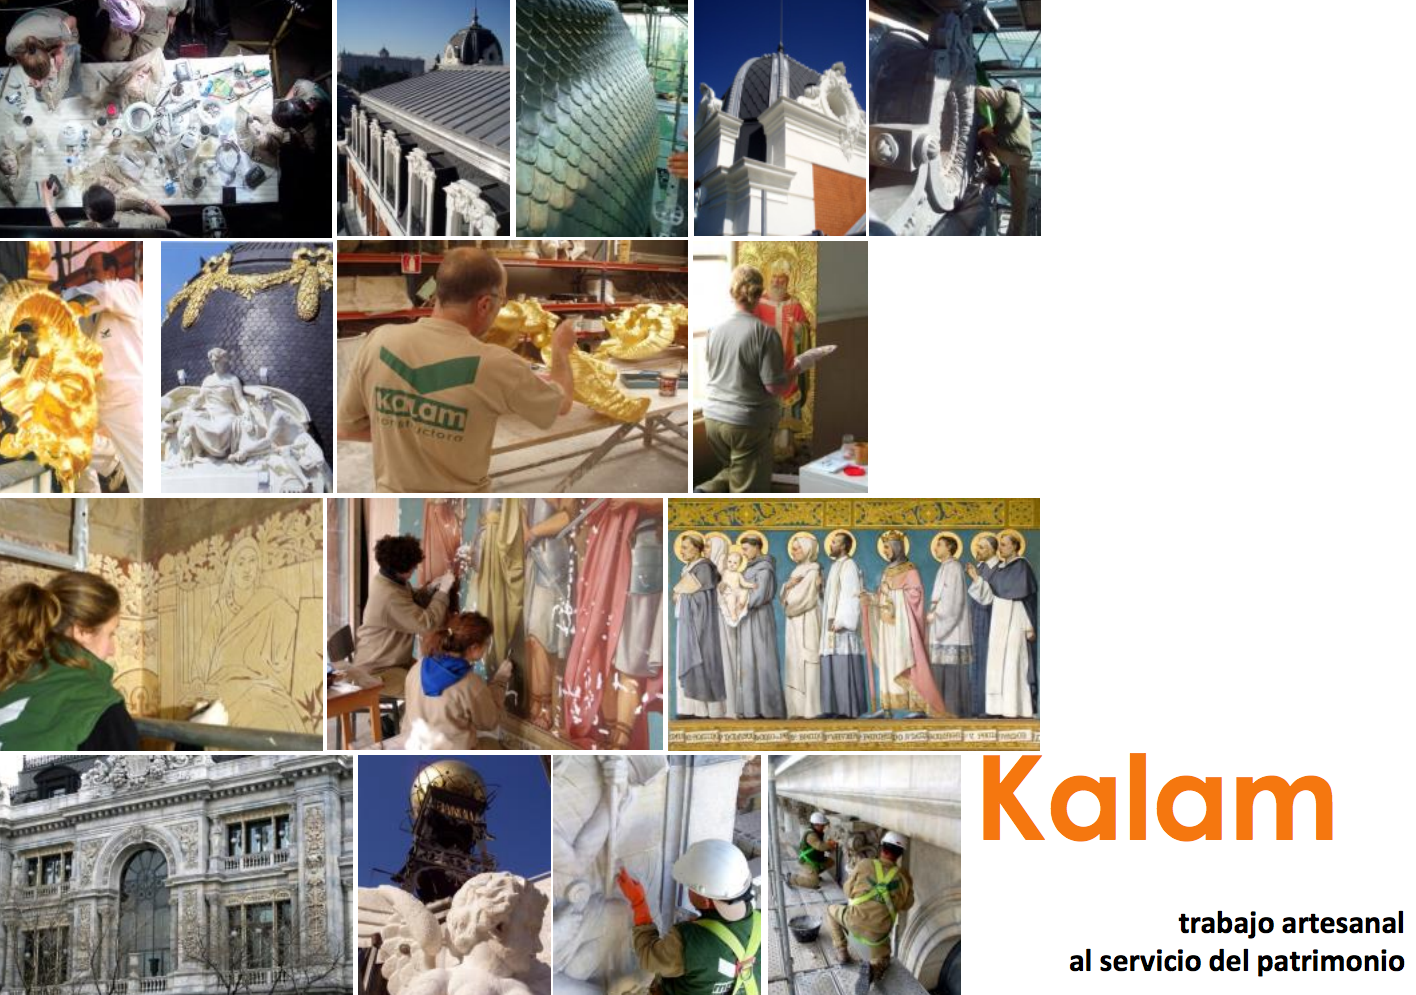 Kalam obtiene una Mención Especial en el marco de los Premios de la Unión Europea al Patrimonio Cultural / Concurso Europa Nostra 2016